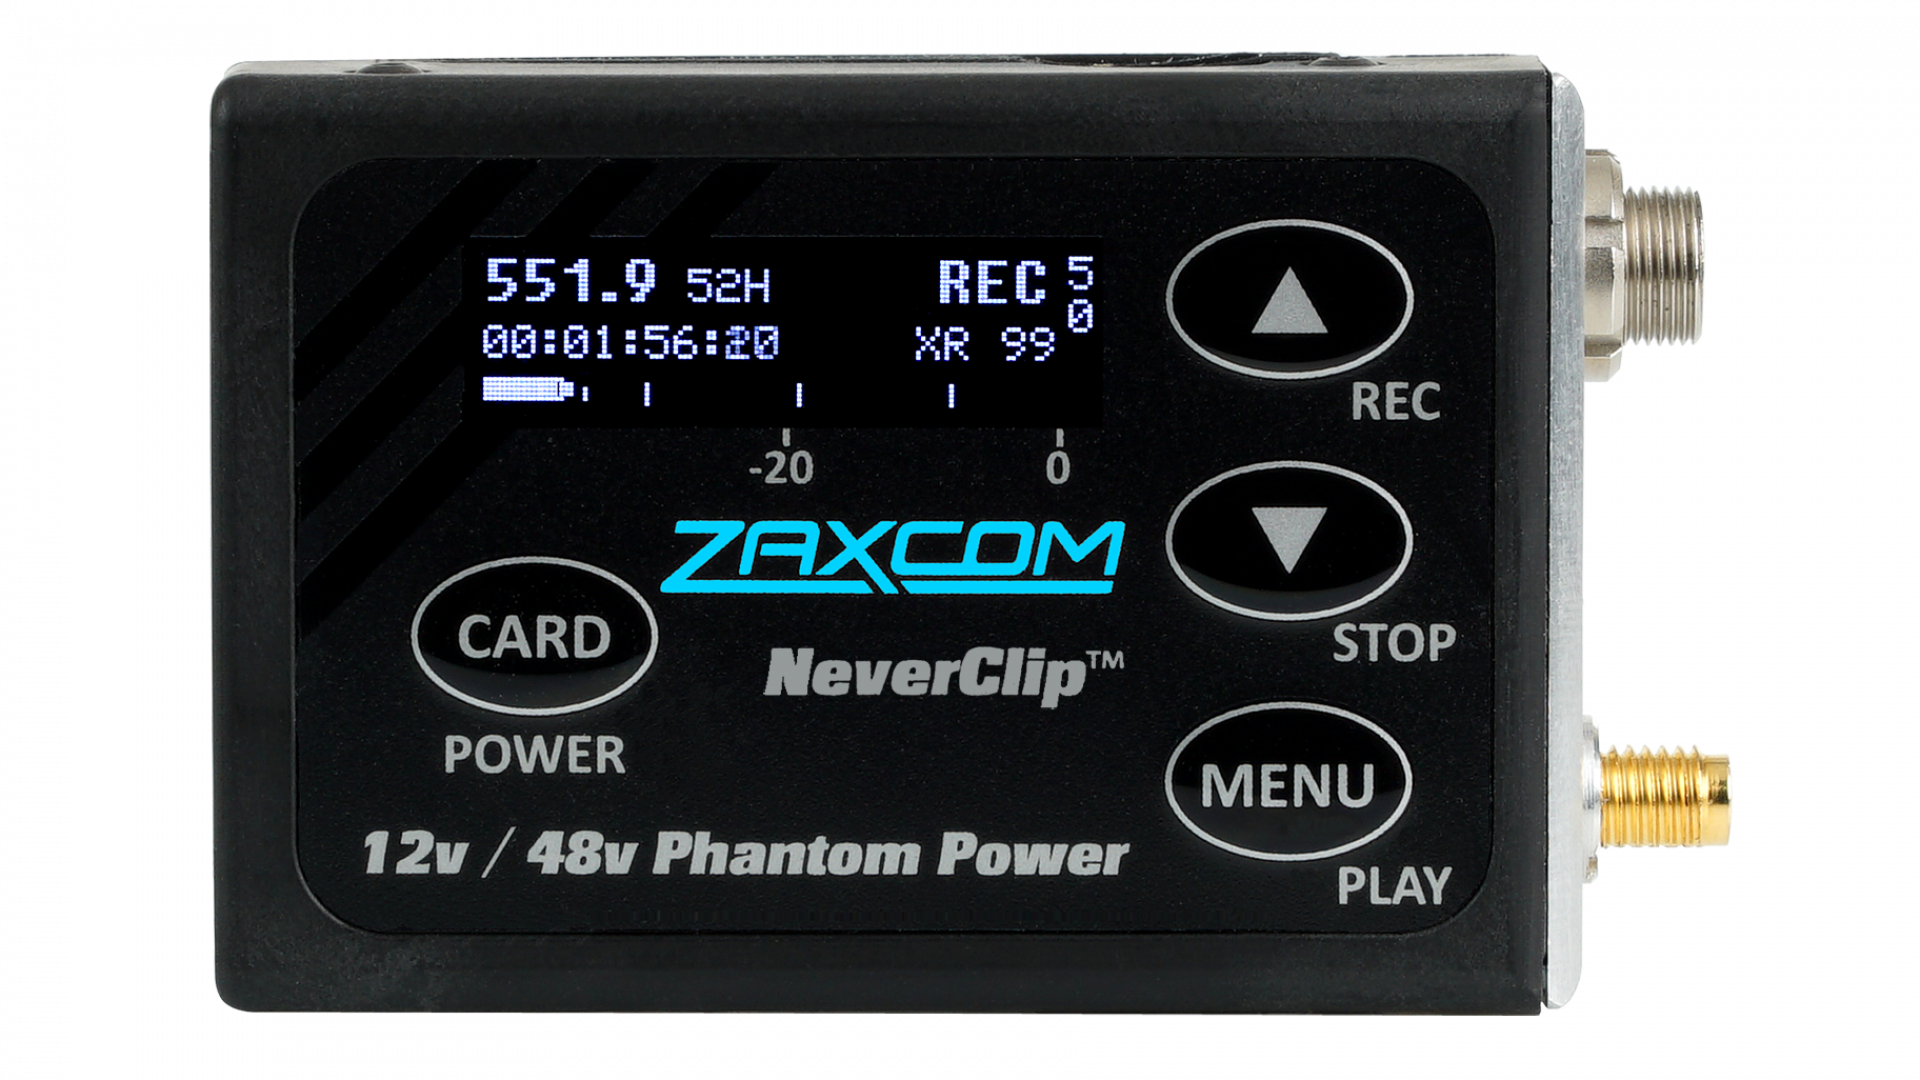 Console de mixage Audio 6 canaux, Microphone intégré UHF sans fil